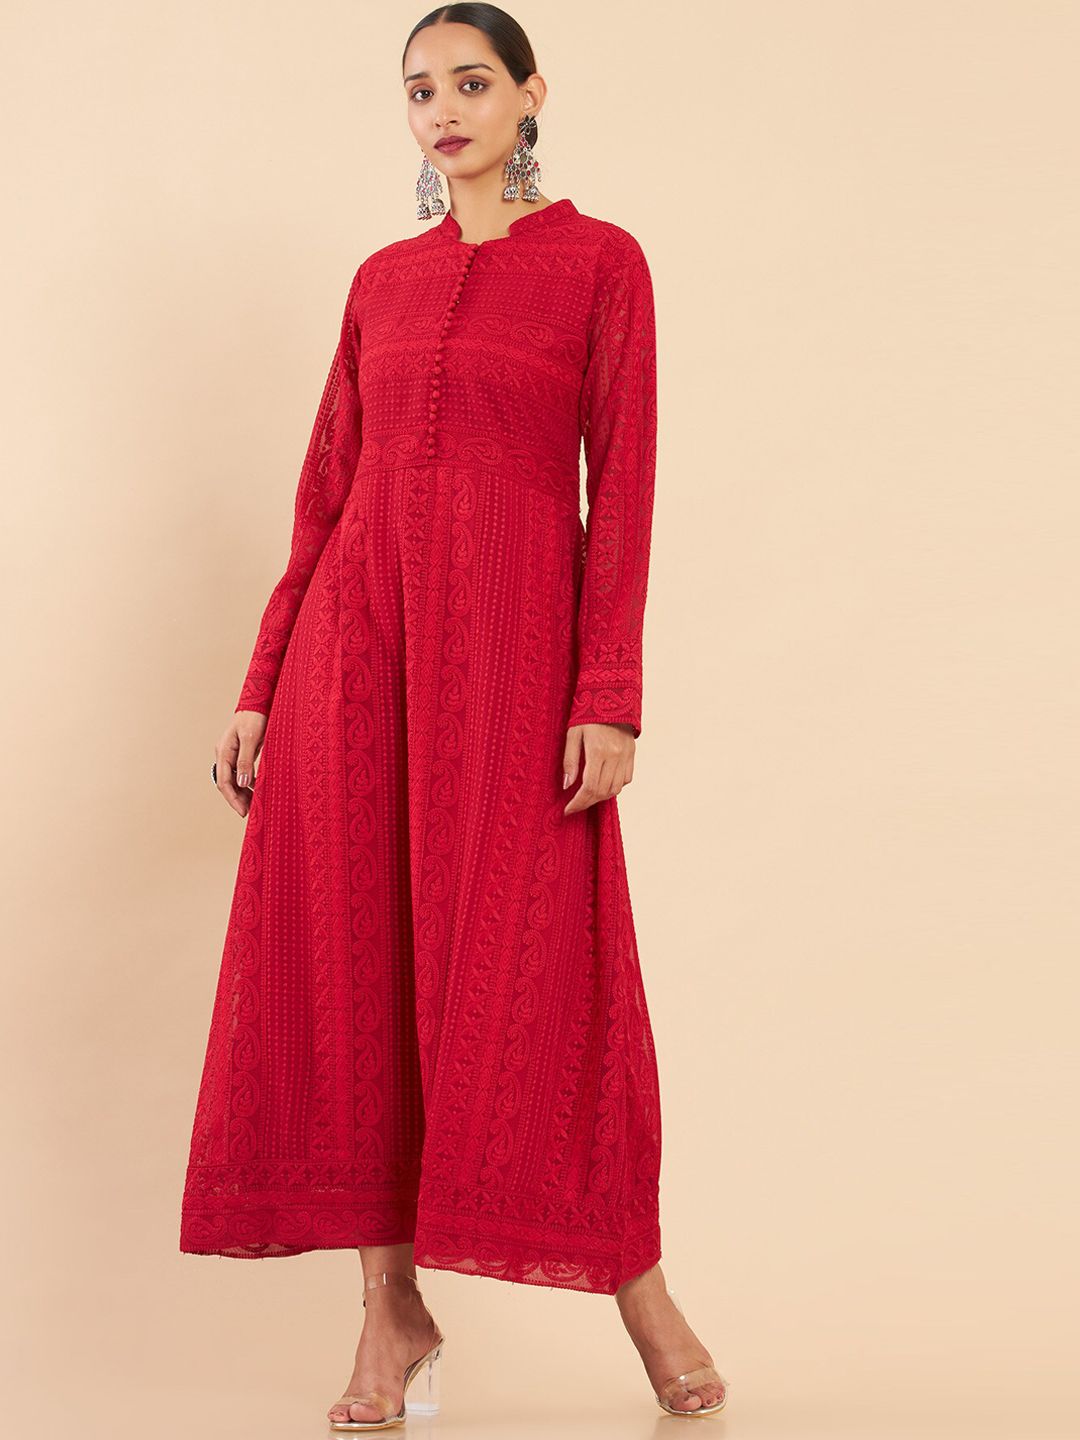 Soch Women Red Thread Work Georgette Anarkali Kurta Price in India